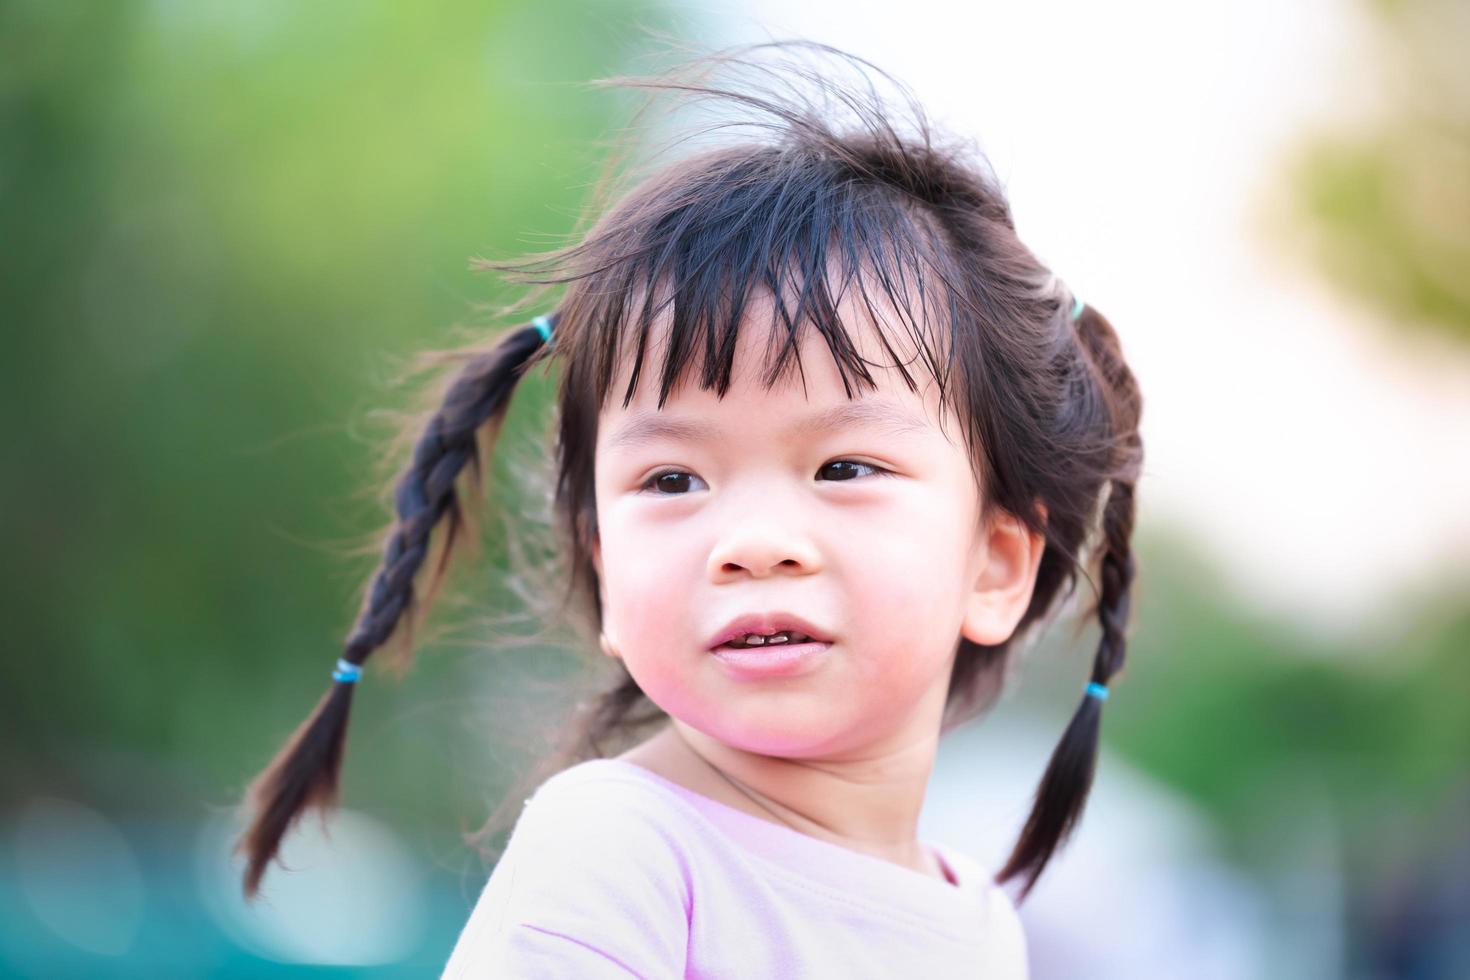 Kopfschuss. glückliches süßes Kind süßes Lächeln. asiatisches Mädchen flechten zwei Zöpfe. Naturhintergrund verwischen. im Sommer oder Frühling. Kind im Alter von 4 Jahren, das ein weiches rosa Hemd trägt. foto